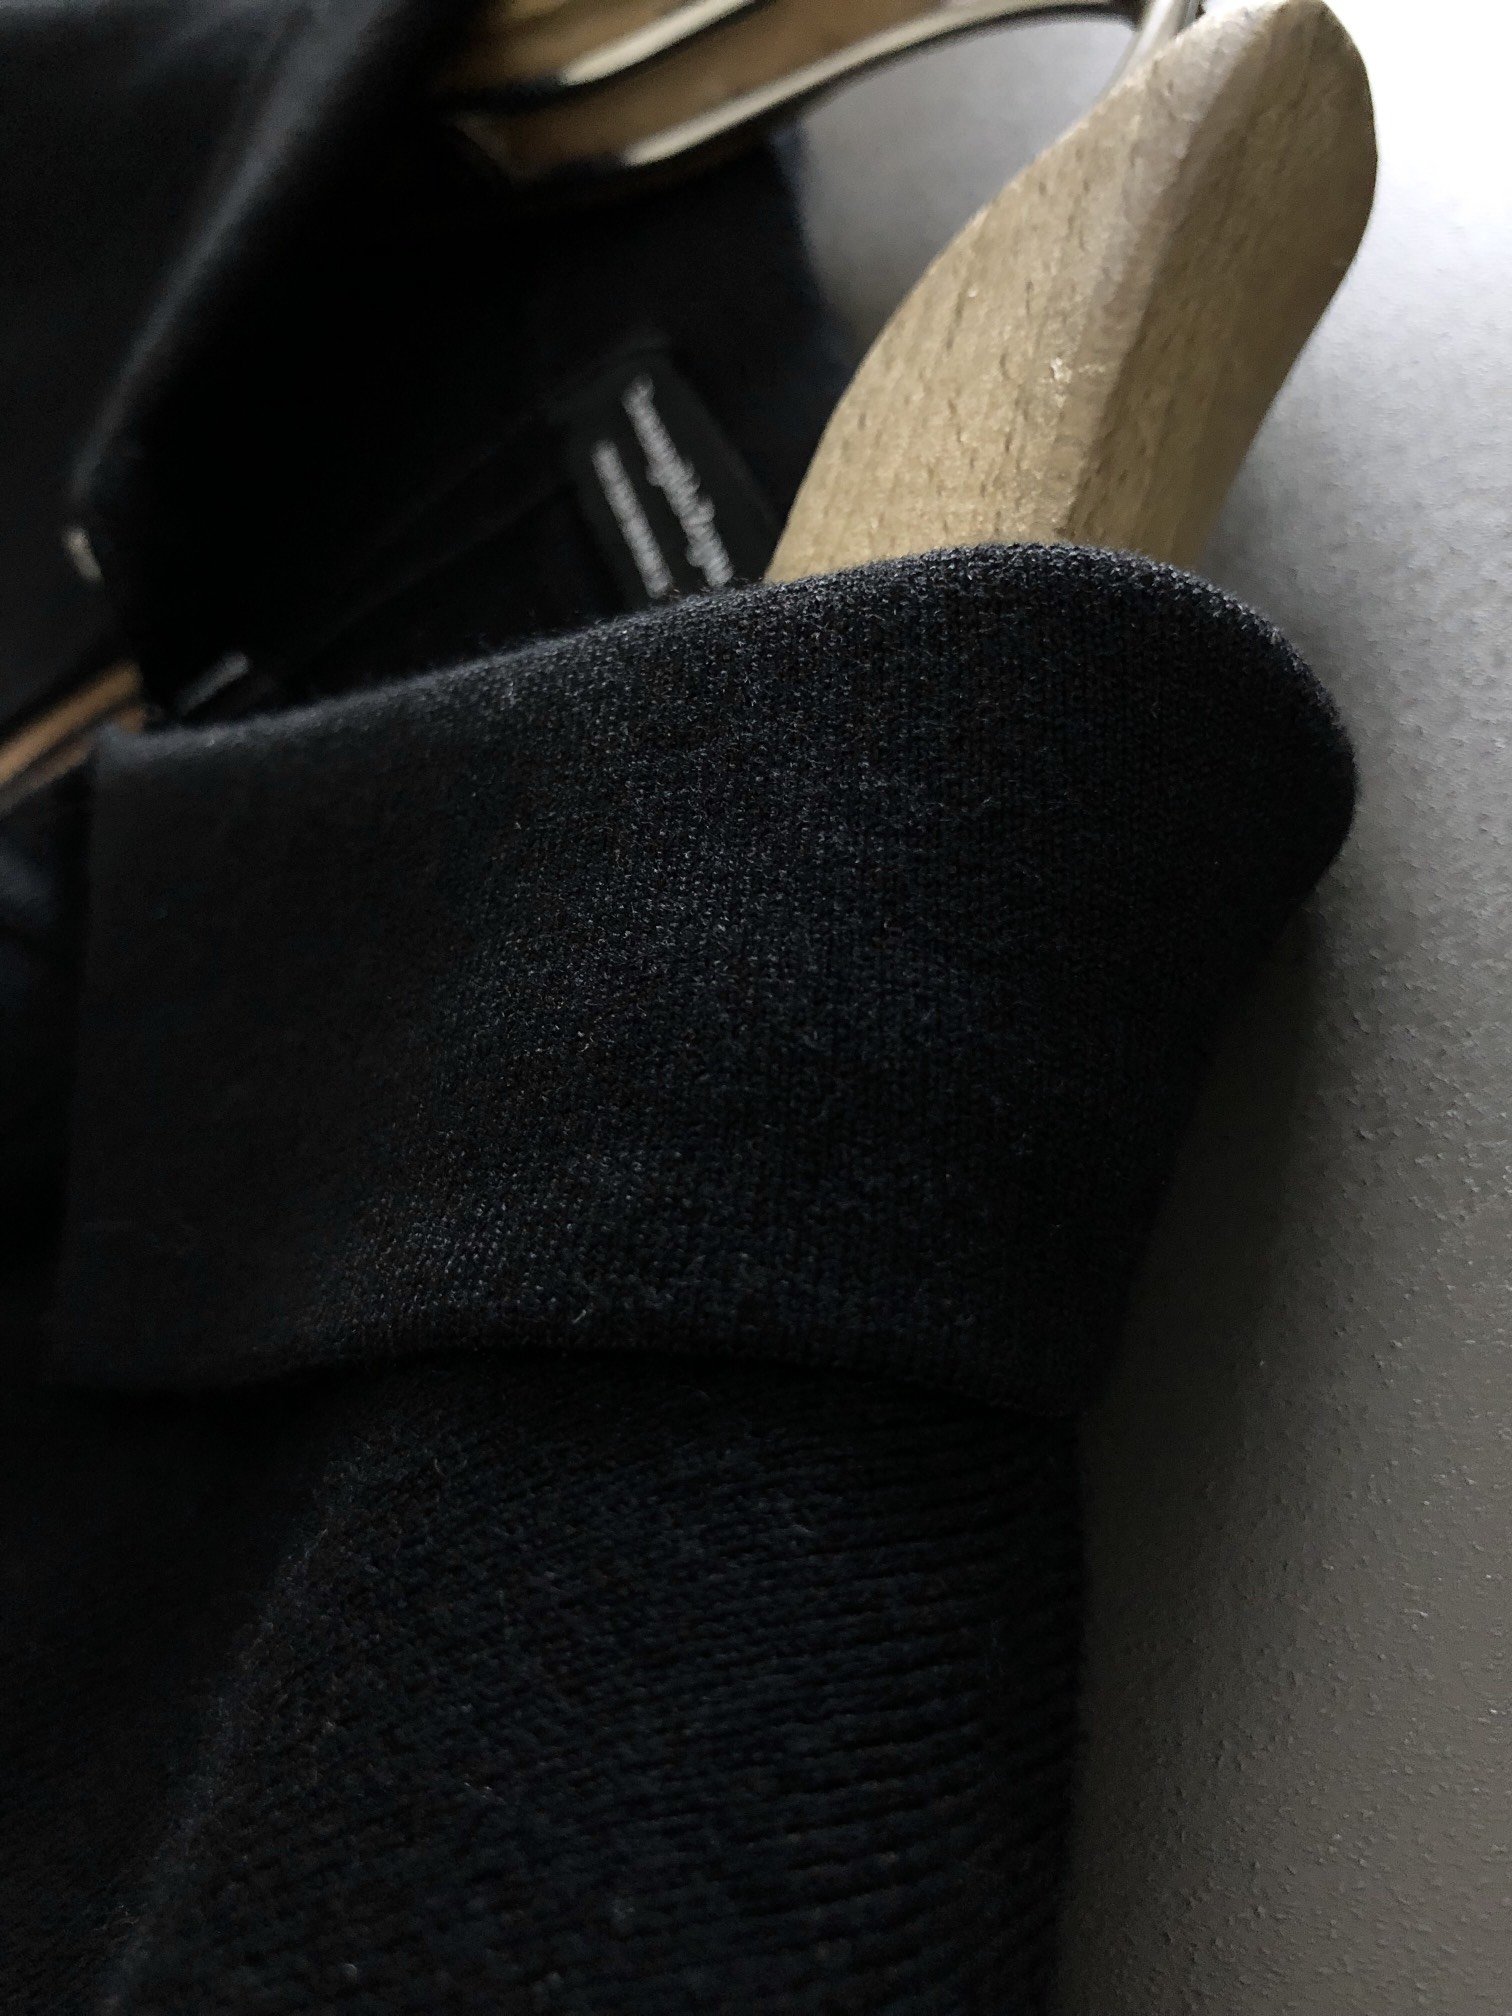 ZA**23最顶级版本黑色双杆提花款羊毛开衫专柜一摸一样打造顶级款时尚百搭款进口面料顶级高工艺版型超好耐